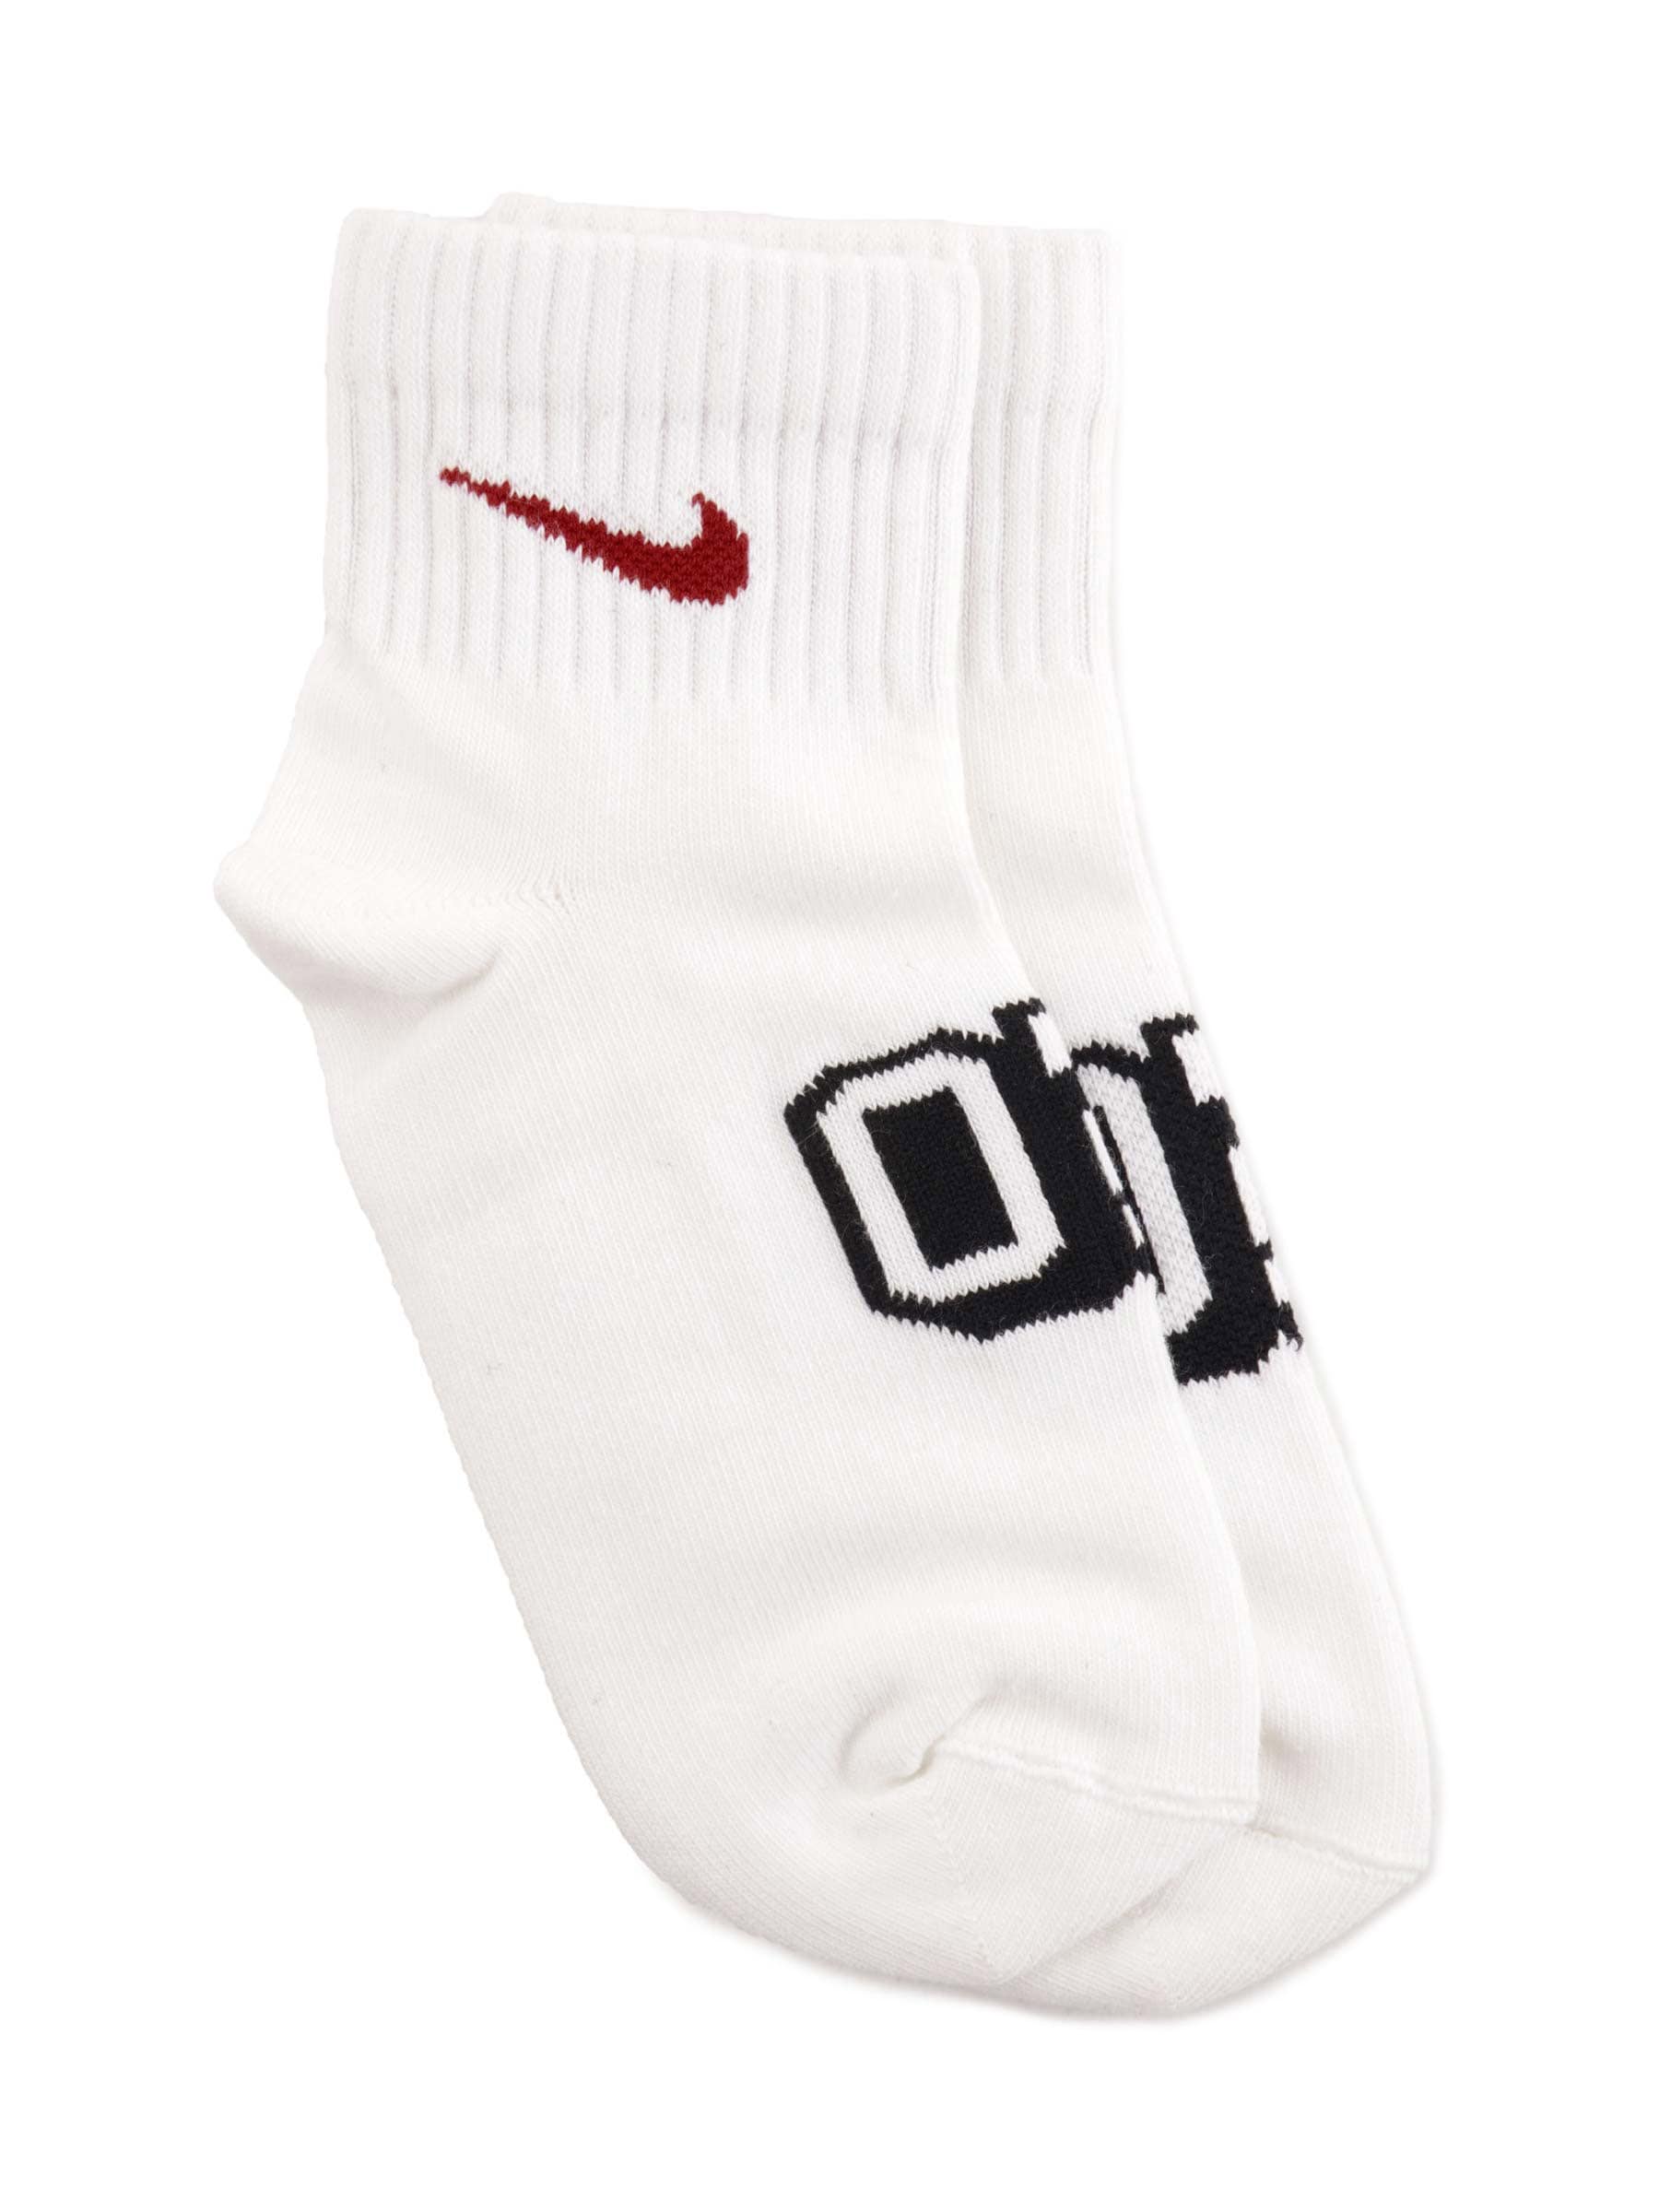 Nike Kids-Unisex Solid White Socks